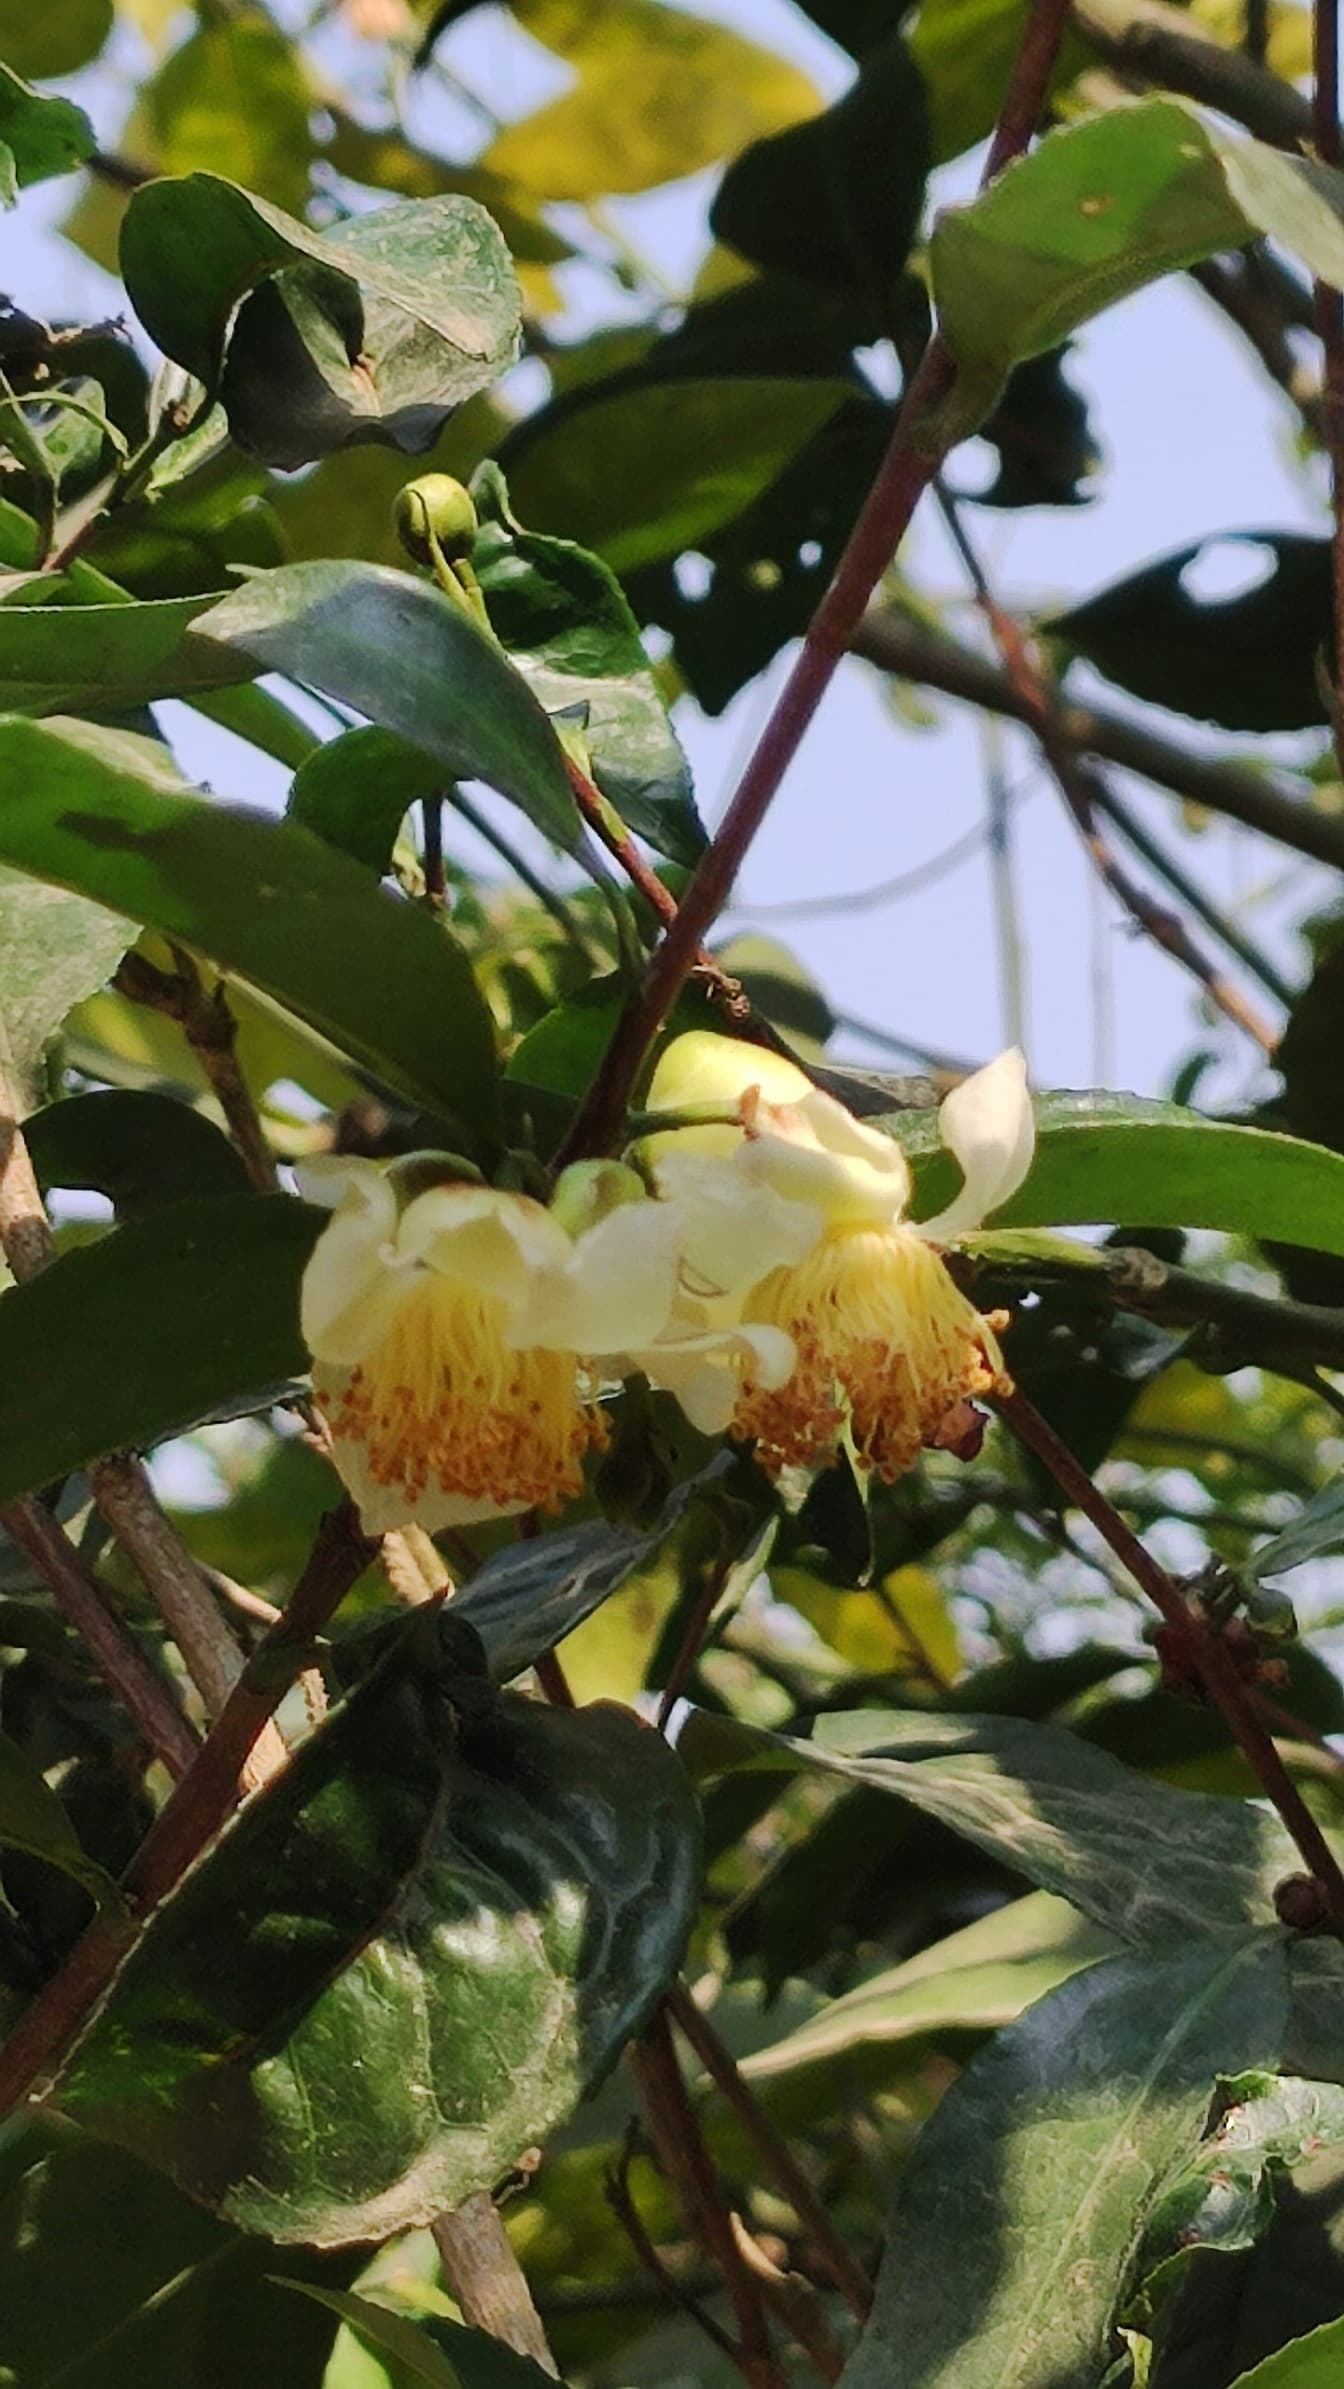 ดอกคามิเลียสีเหลือง (Camellia sinensis) อยู่ตามกิ่งก้านและใบสีเขียว